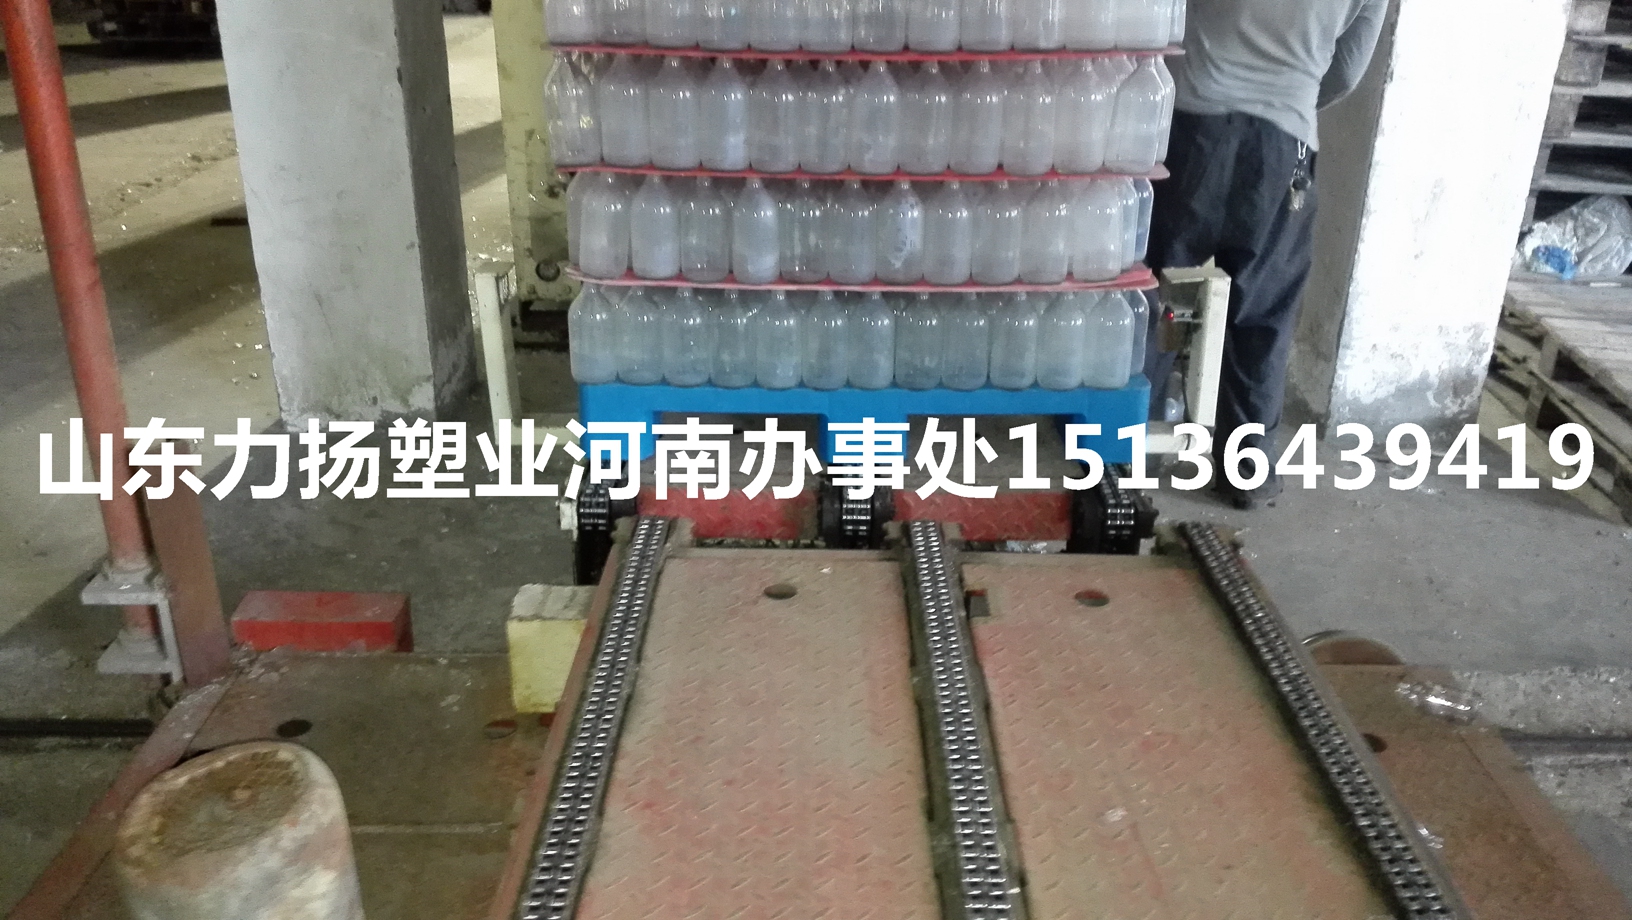 郑州市玻璃瓶，酒瓶，药瓶专用塑料托盘厂家